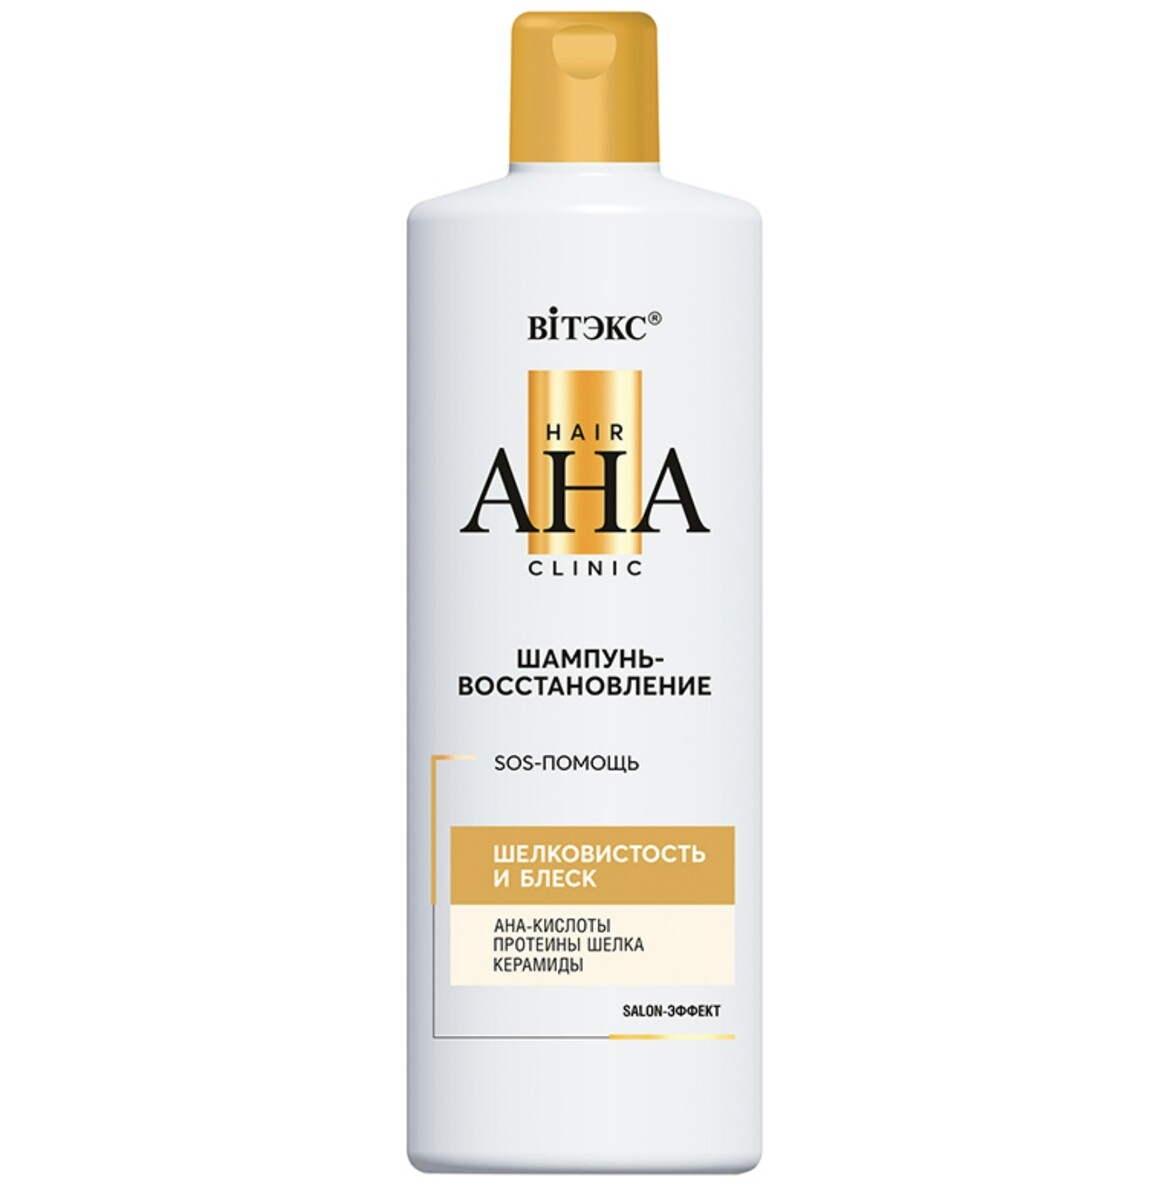 Hair aha clinic шампунь-восстановление для волос шелковистость и блеск 450мл бульонница овощи 450мл china new cn3089